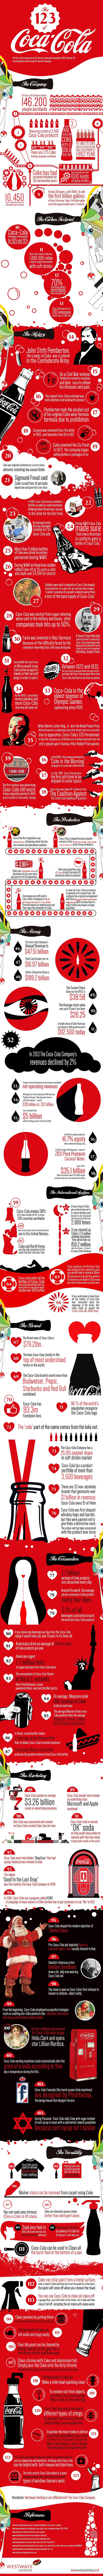 coca cola infographic